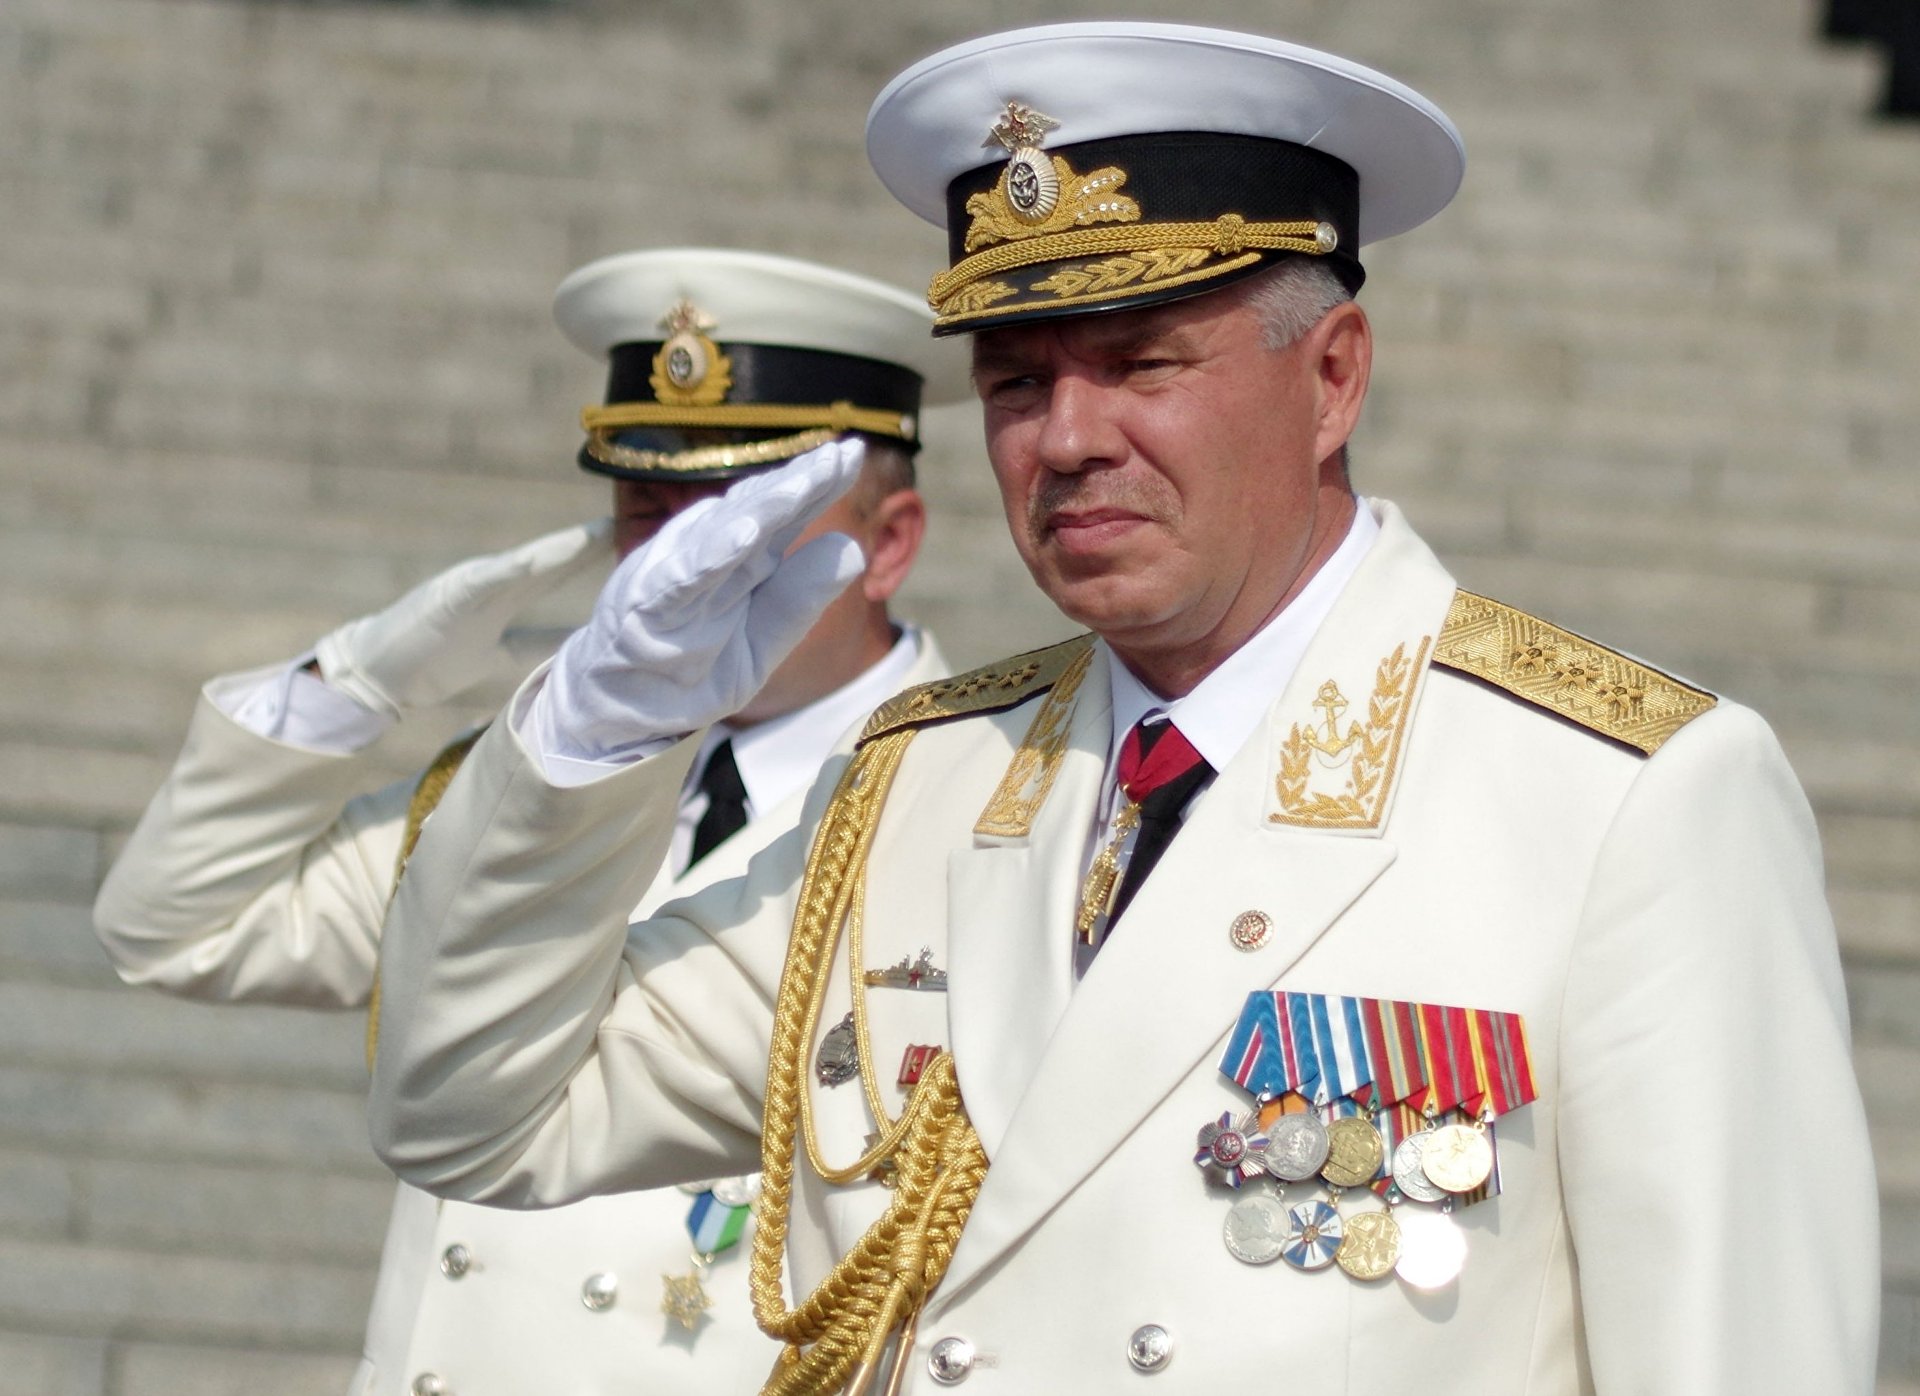 Спас в 2014 Черноморский флот, а его заочно приговорили к 15 годам тюрьмы и штрафу 2 трлн рублей. Кто и за что вынес приговор адмиралу Витко